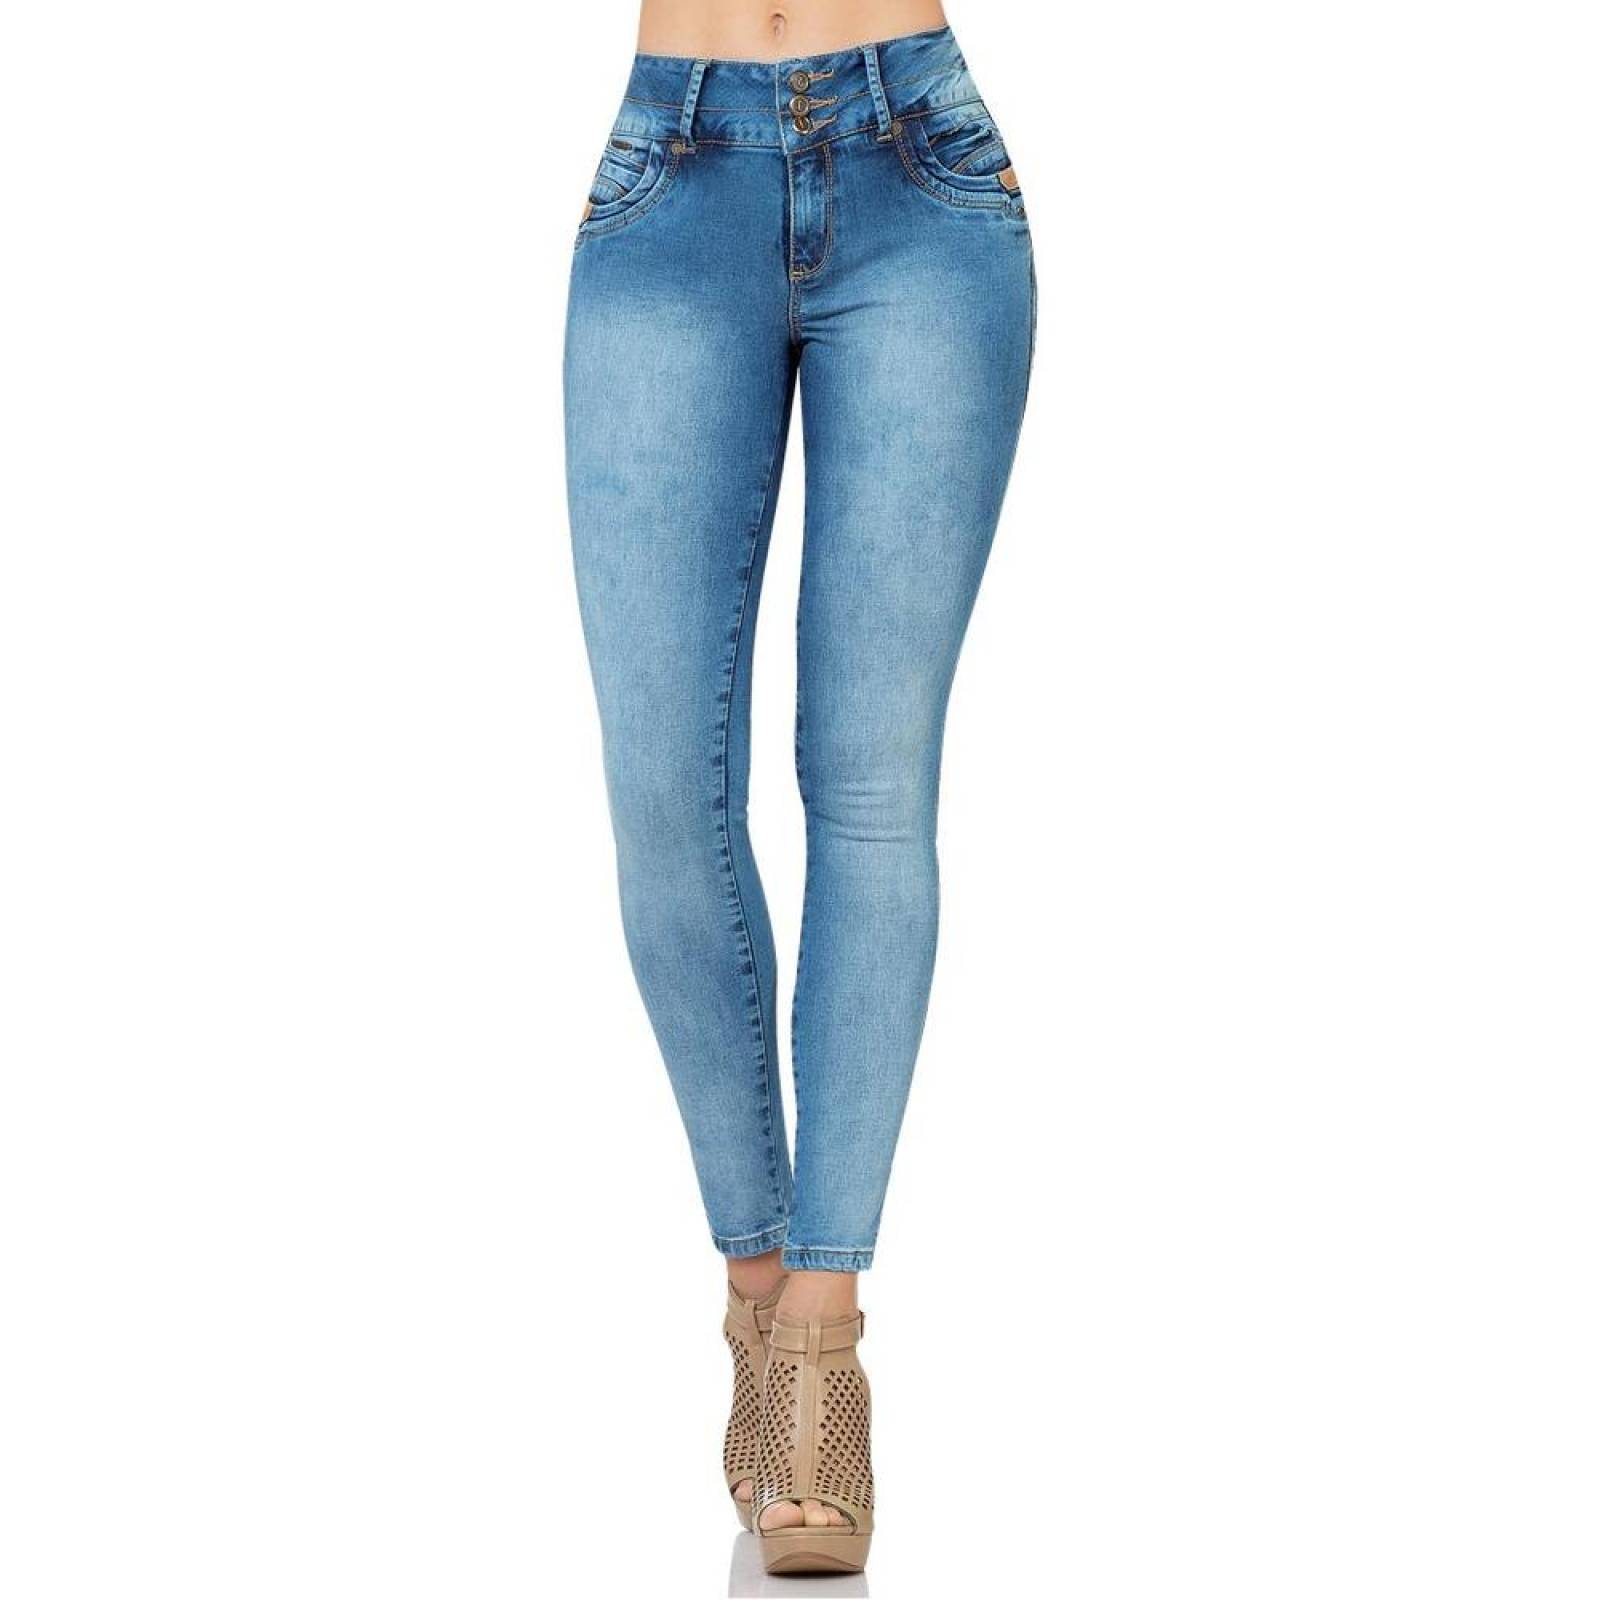 Jeans Fergino Jeans Mujer Stone Medio Mezclilla Stretch 